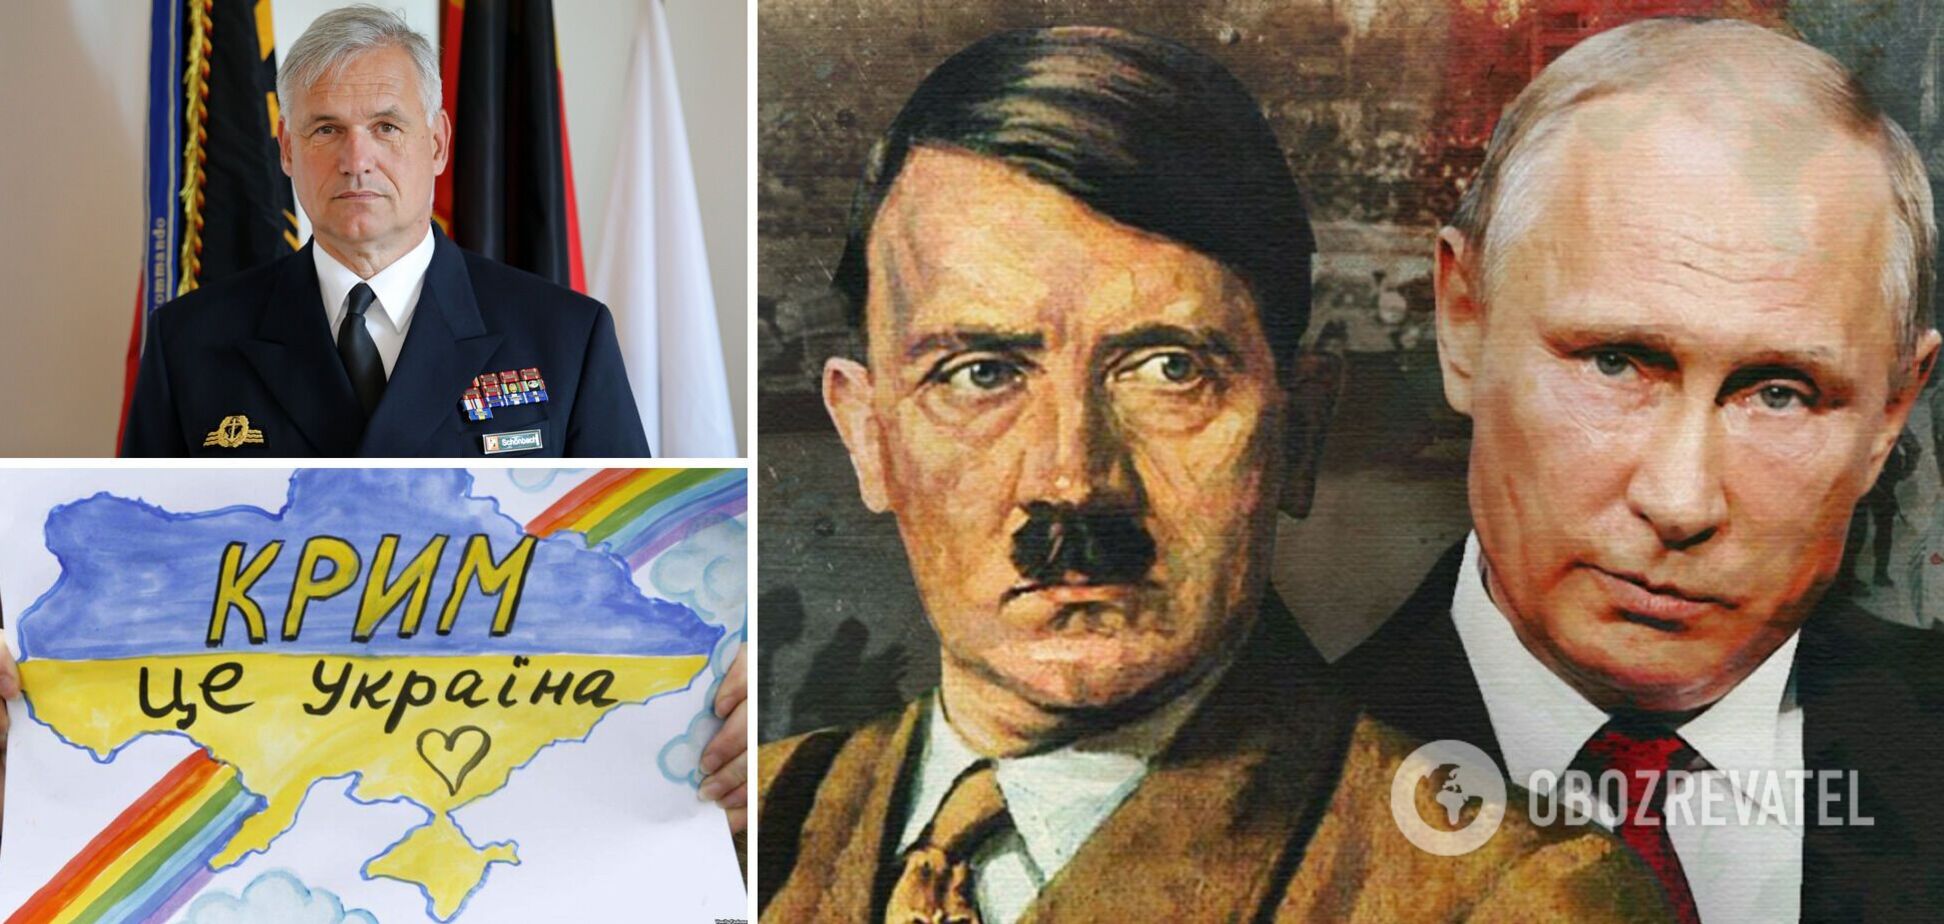 Нагадаймо нашим німецьким камрадам: не варто ставати посібниками Гітлера наших днів